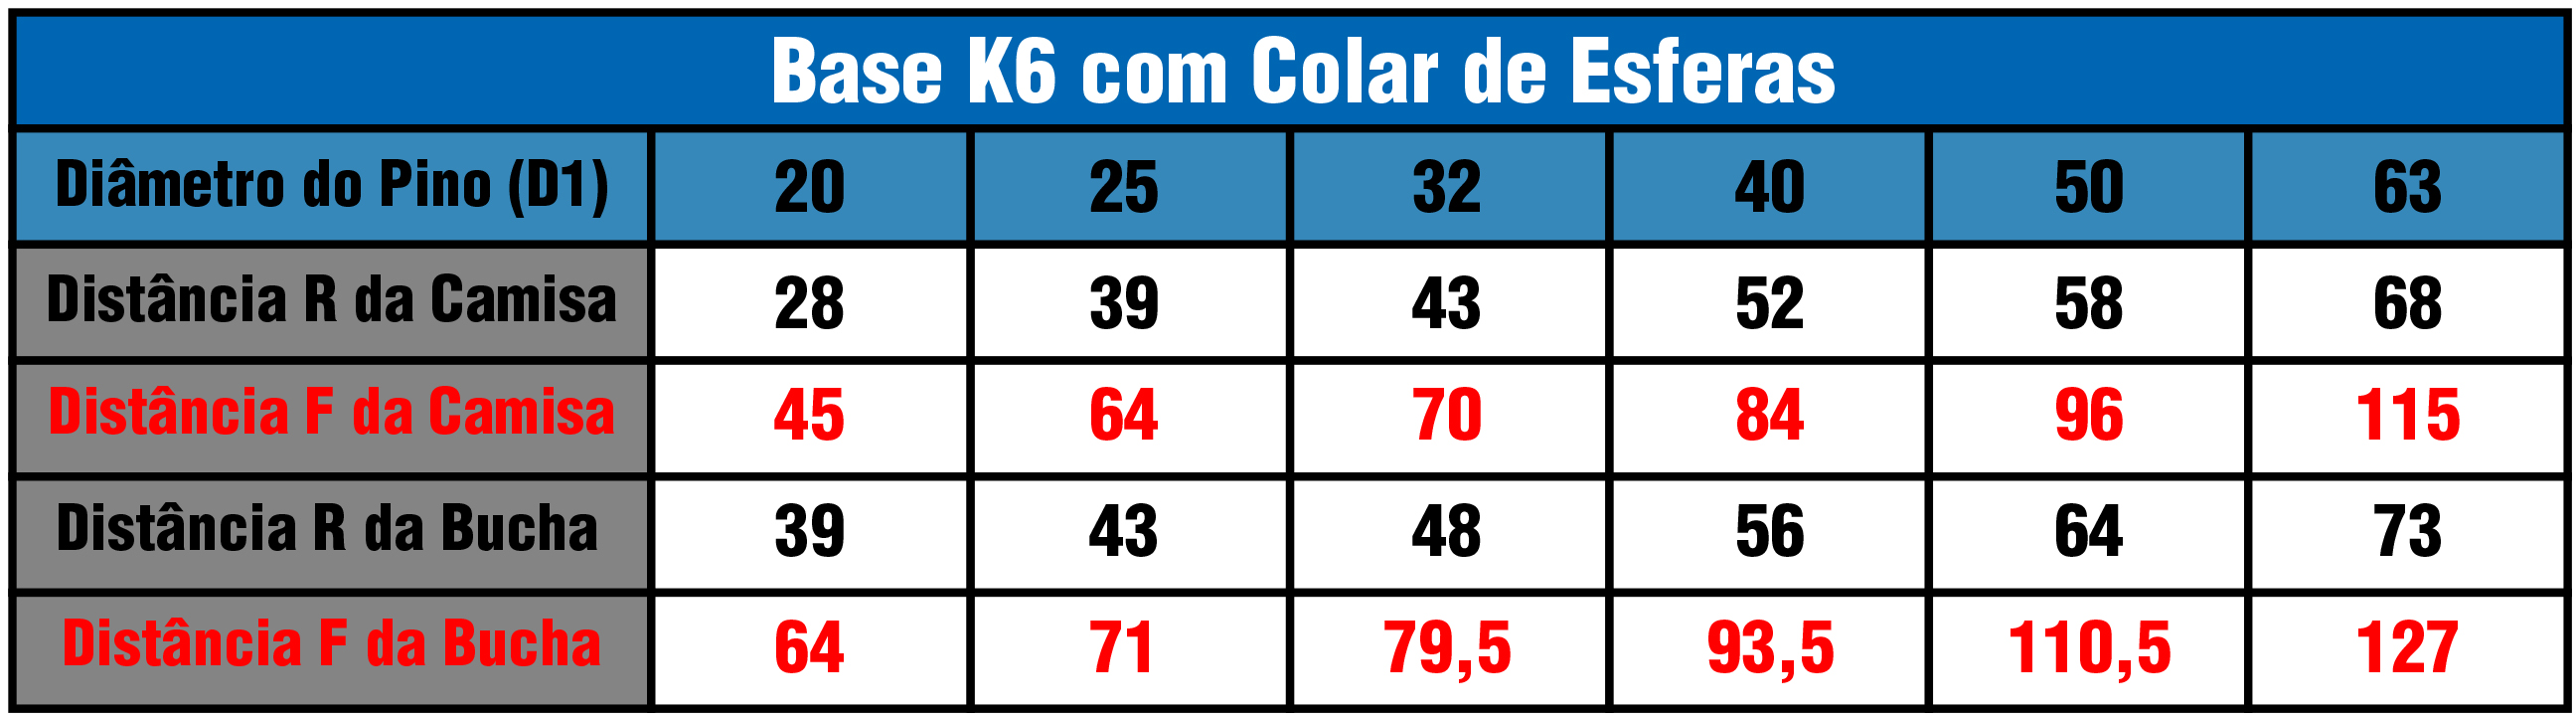 Tabela Base K6G